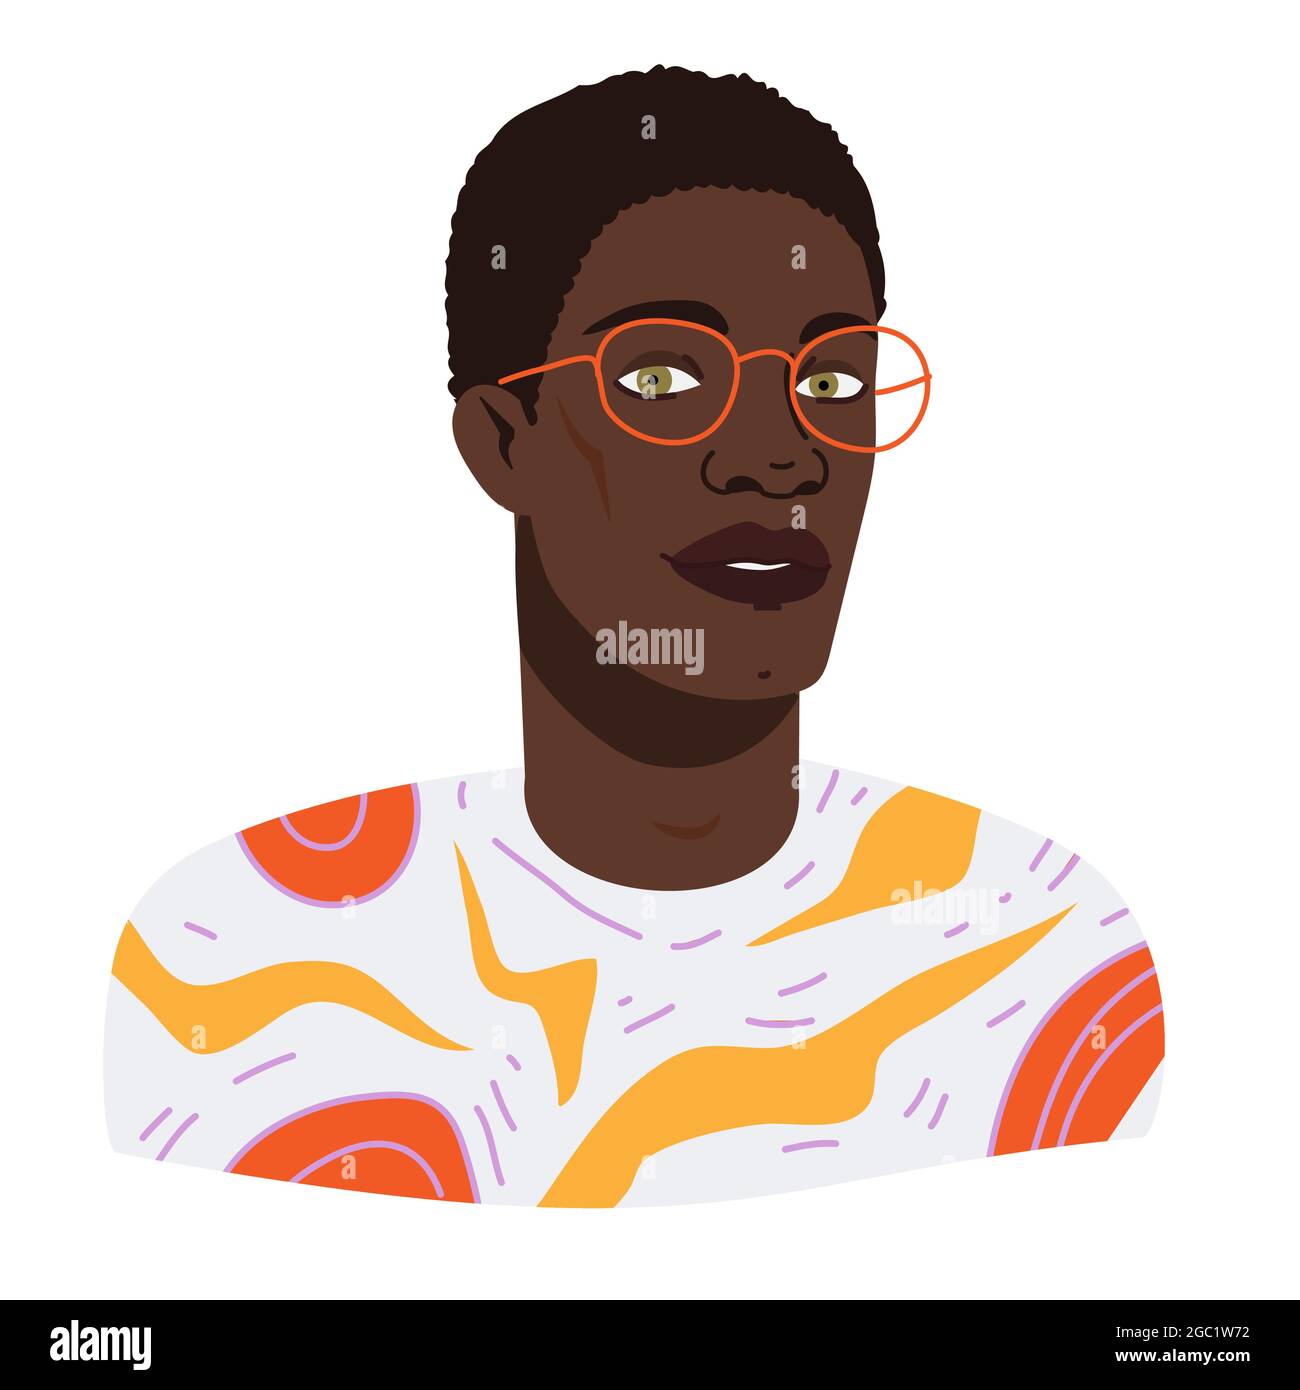 Portrait eines schwarzen Studenten mit Brille und trendigem Outfit. Vektor-Illustration Avatar von stilvollen jungen afroamerikanischen Mann in Cartoon flachen Stil Stock Vektor